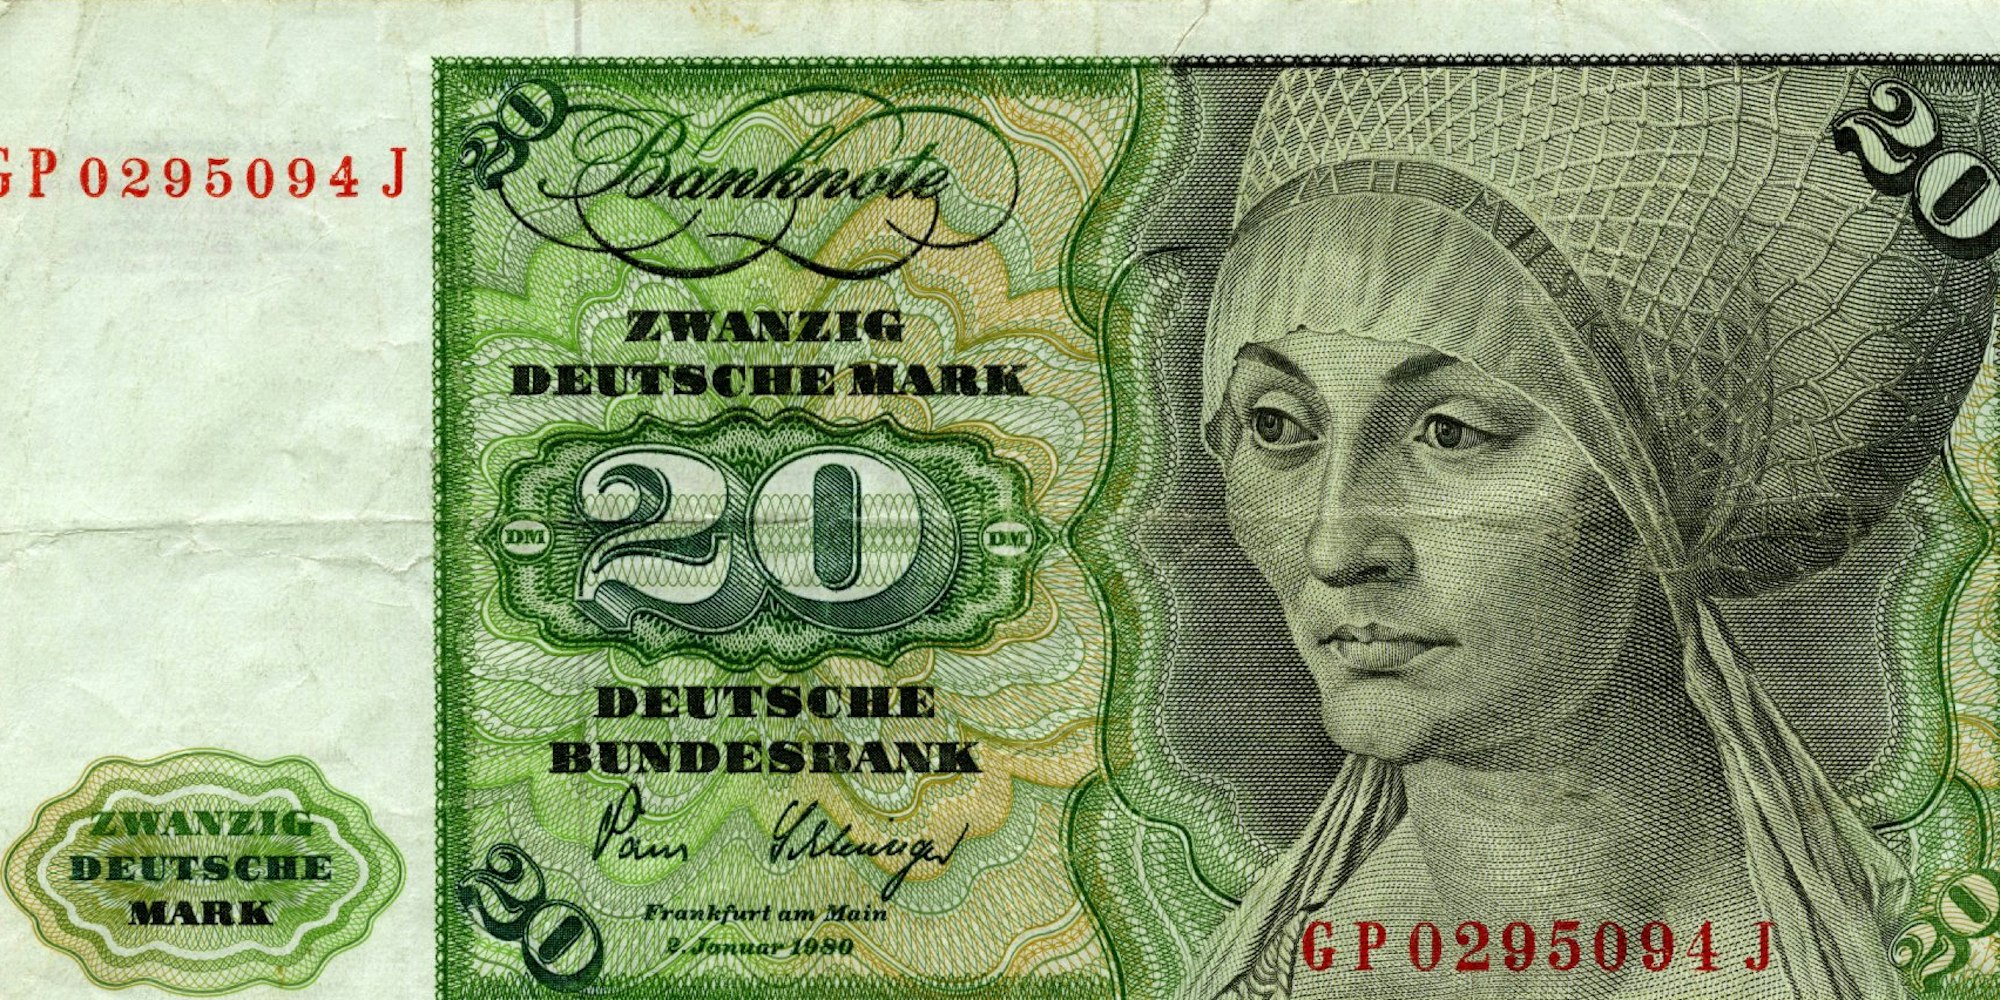 Diese Version des Zwanzig-D-Mark-Scheins war am längsten unverändert in Umlauf. Sie wurde als erste Banknote der dritten Serie am 10. Februar 1961 erstmals ausgegeben, erst nach 11.371 Tagen (über 31 Jahren) wurde die Nachfolgenote in Umlauf gebracht.